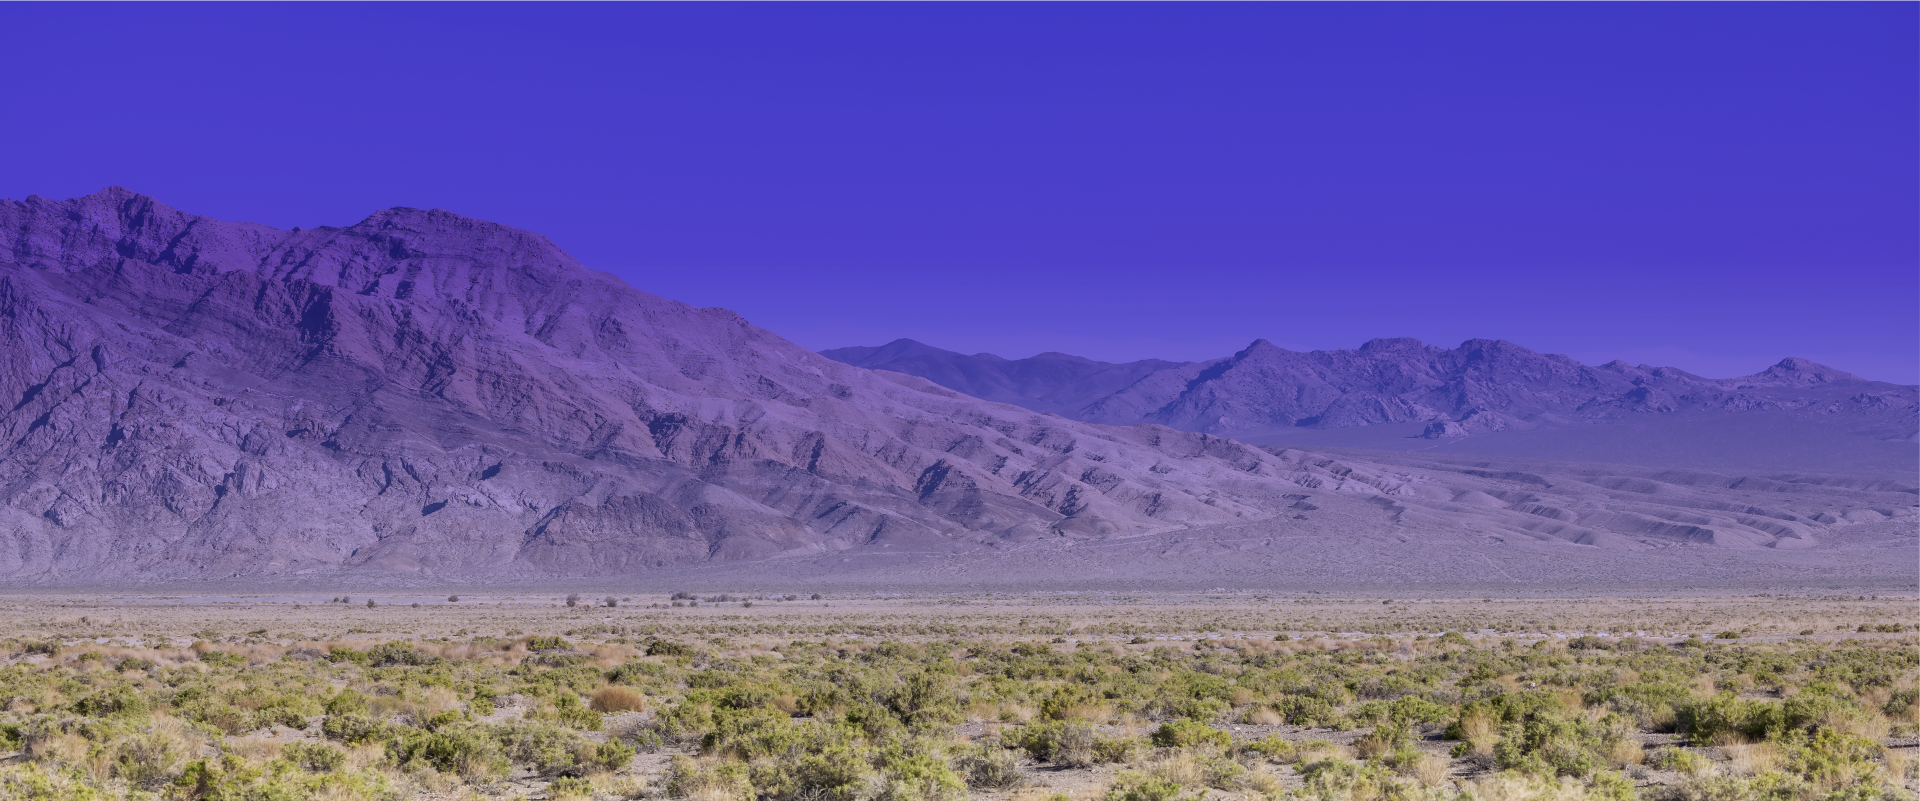 Image of the Nevada desert